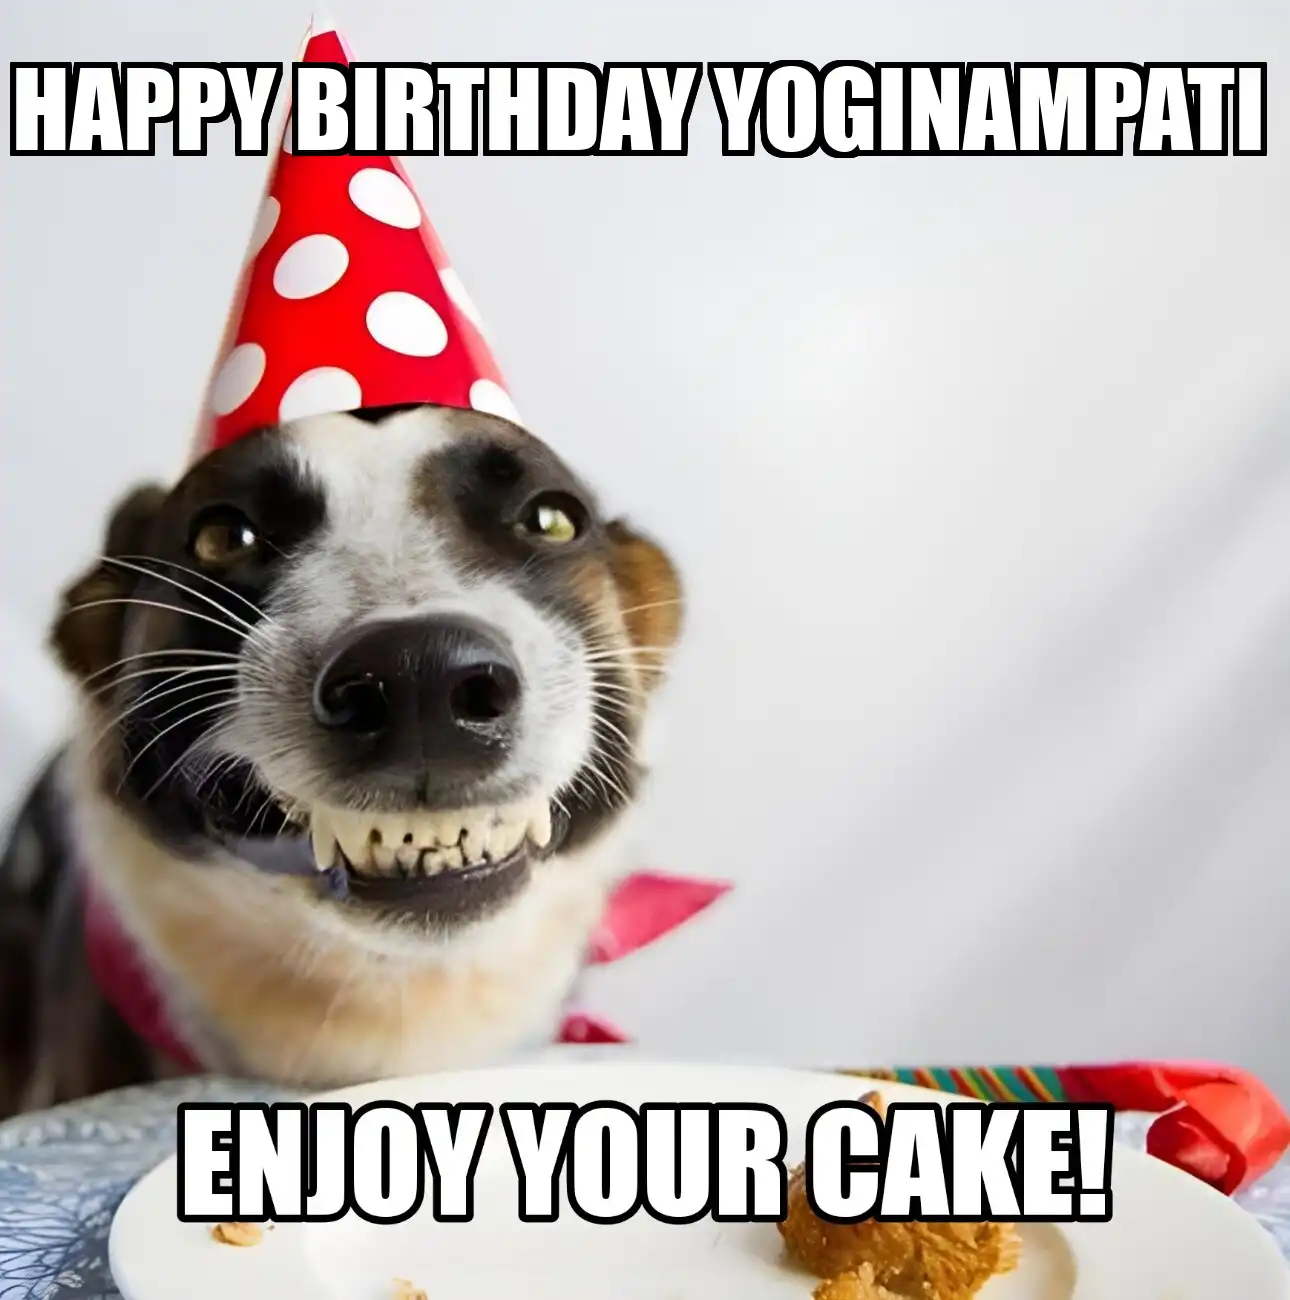 Happy Birthday Yoginampati Enjoy Your Cake Dog Meme